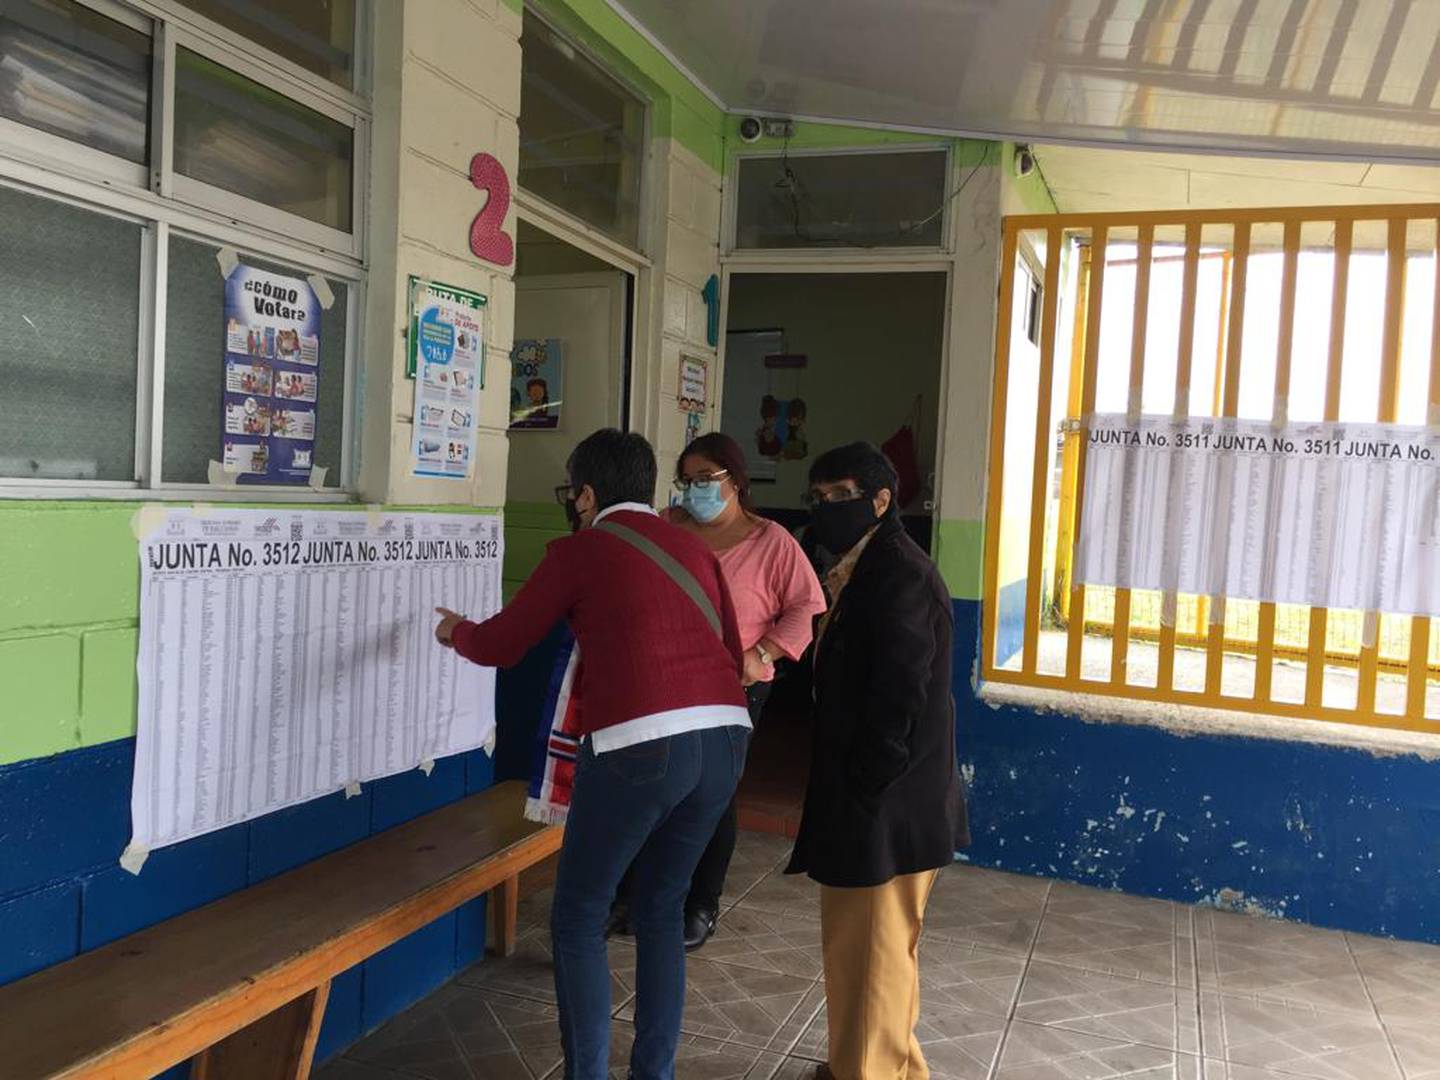 Centros de votación tienen pocos costarricenses en las urnas en las primeras horas de la mañana. Foto: Bloomberg Linea